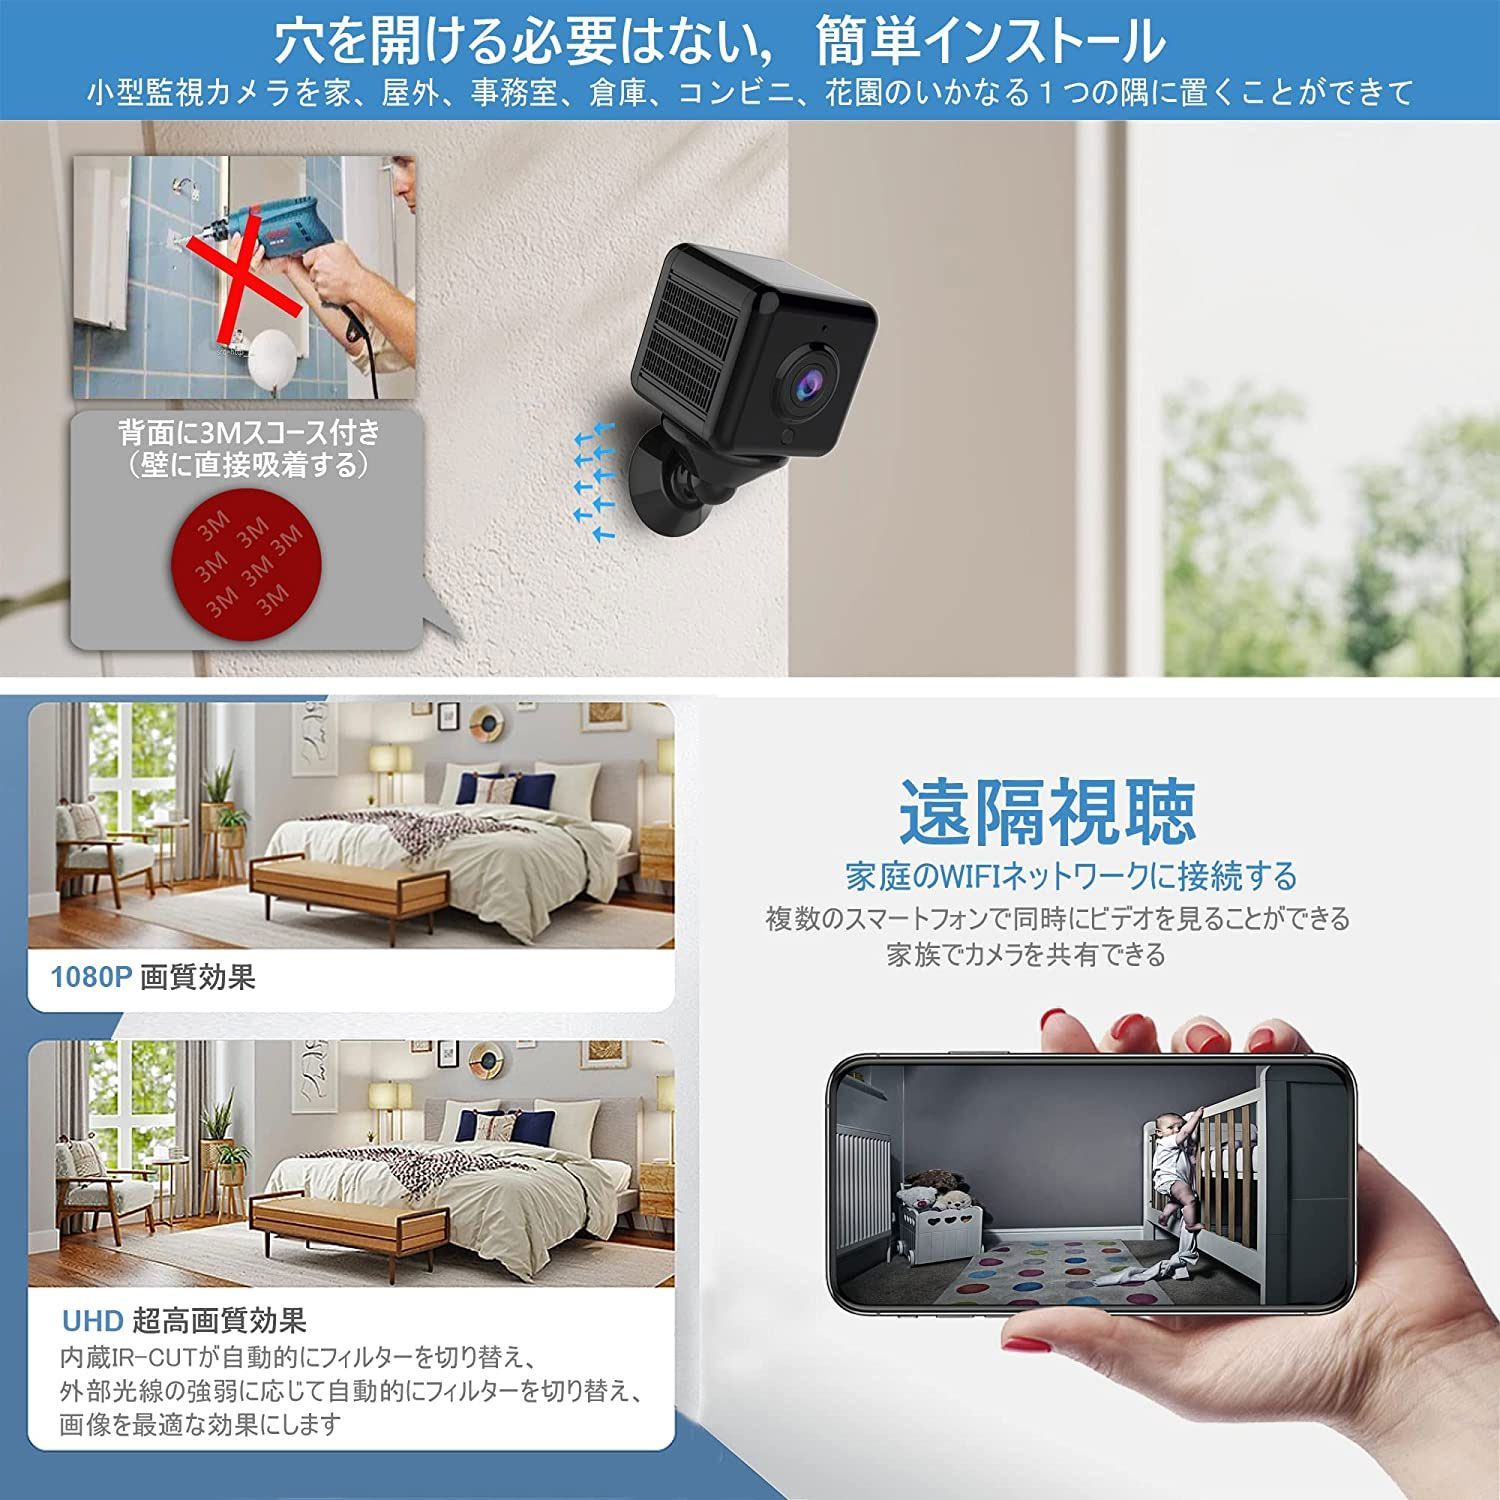 ☆見守りカメラ☆超小型 ペットカメラ 24時間録画 USB充電 簡単操作